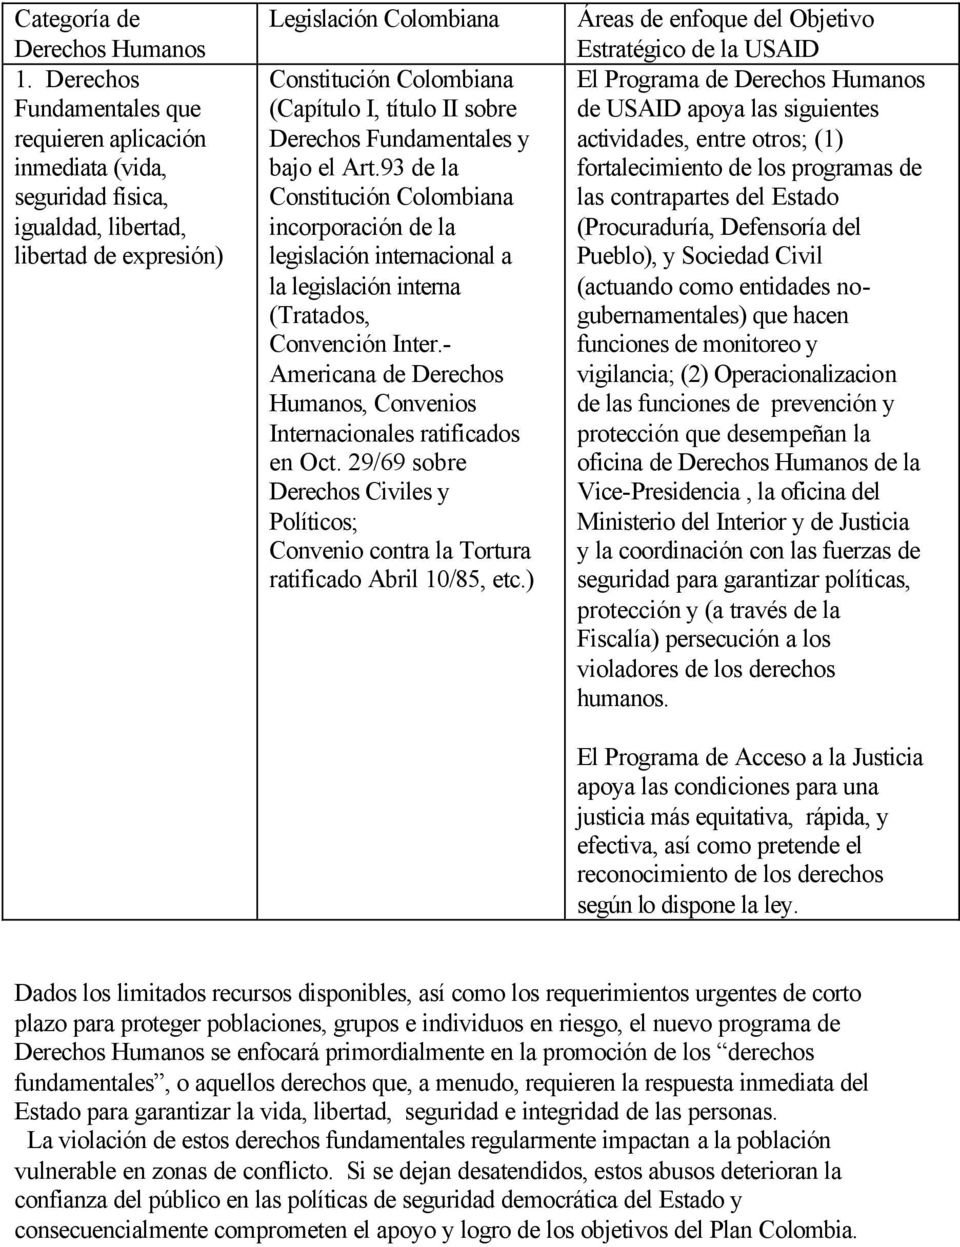 sobre Derechos Fundamentales y bajo el Art.93 de la Constitución Colombiana incorporación de la legislación internacional a la legislación interna (Tratados, Convención Inter.